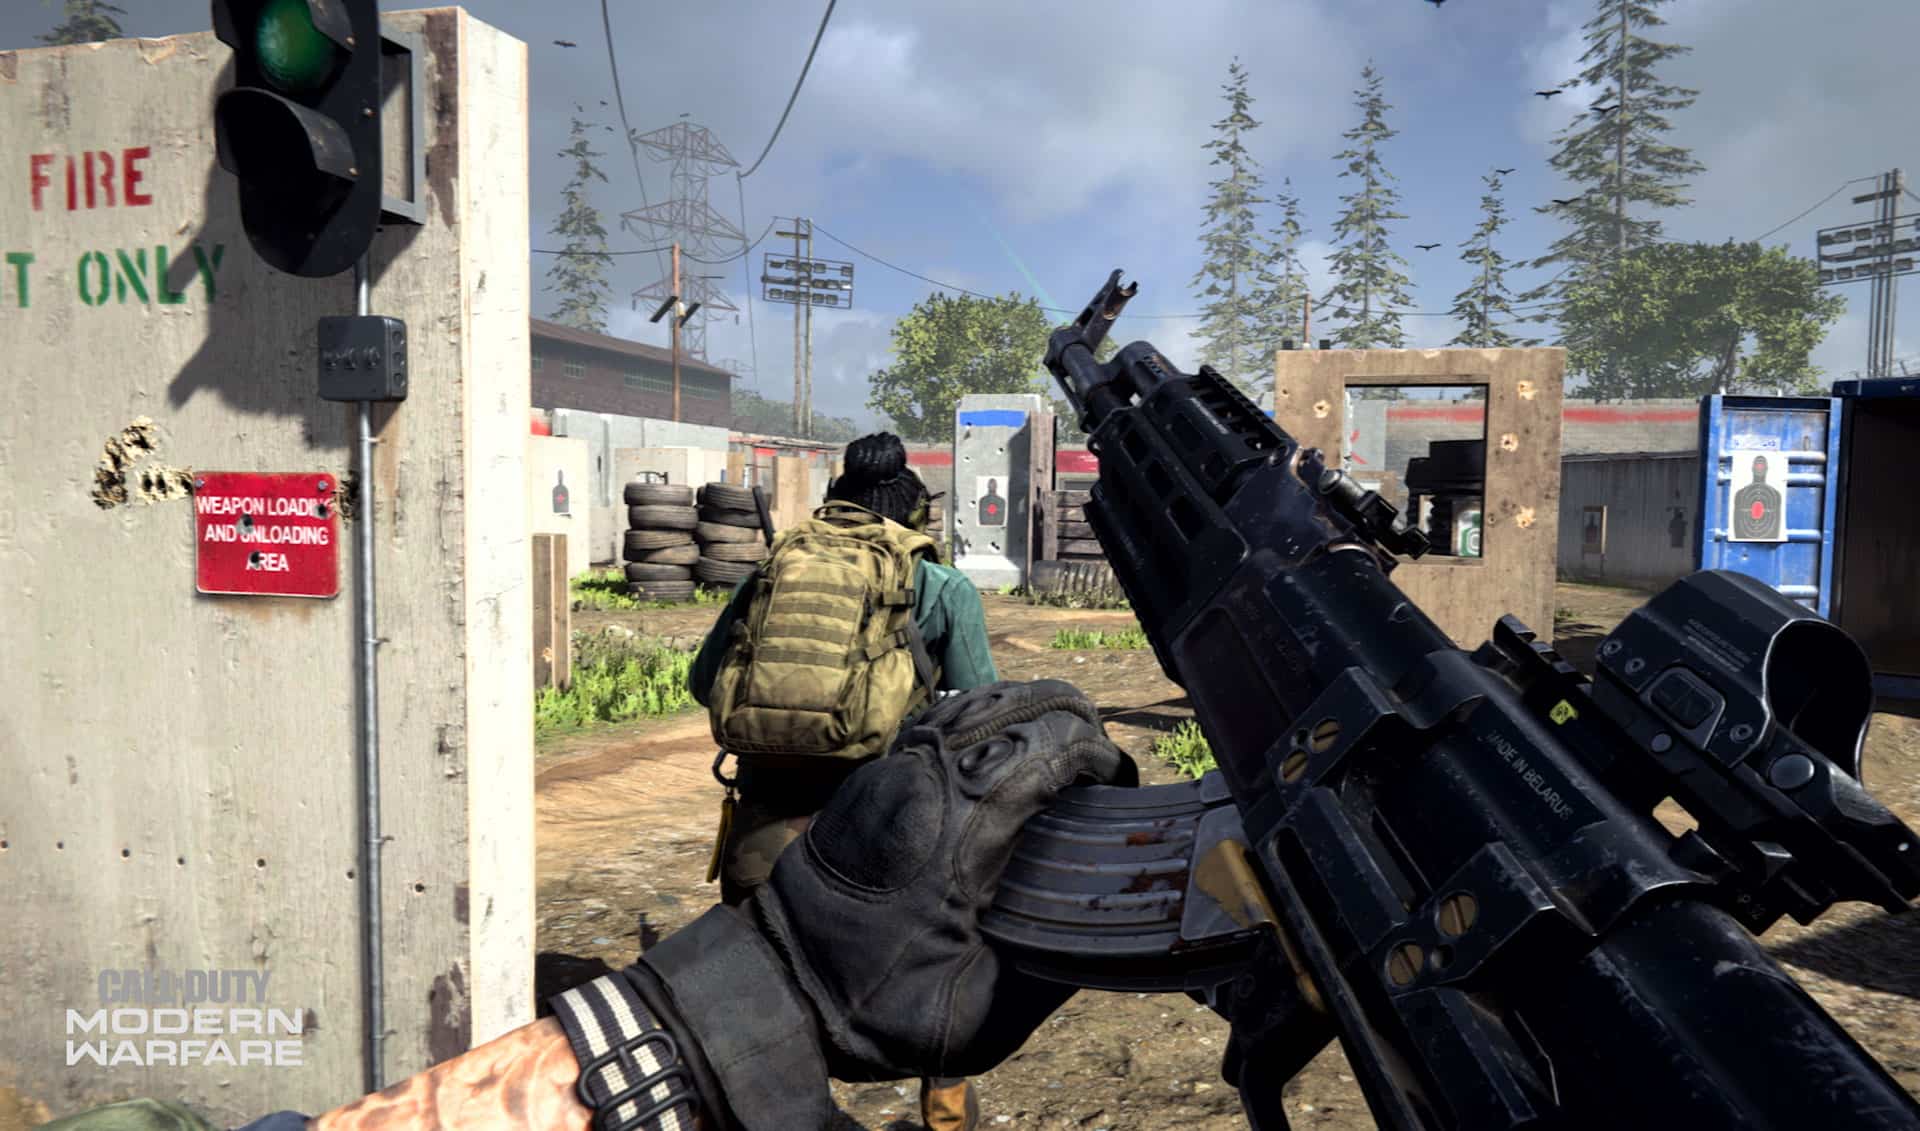 میراث Call Of Duty Modern Warfare 2019 در ژانر FPS مدرن